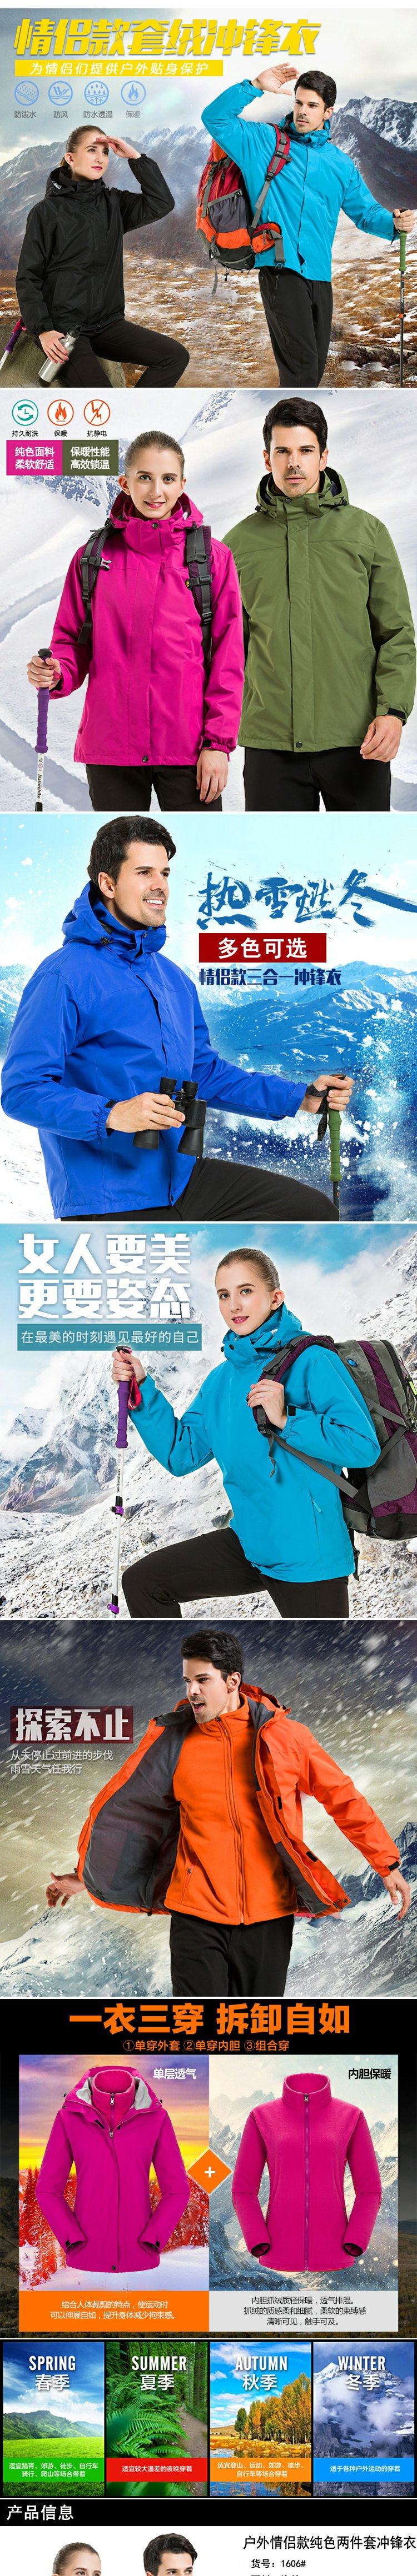 城徒 纯色冲锋衣定制户外防寒服印字绣LOGO 定做冬季两件套滑雪工作服